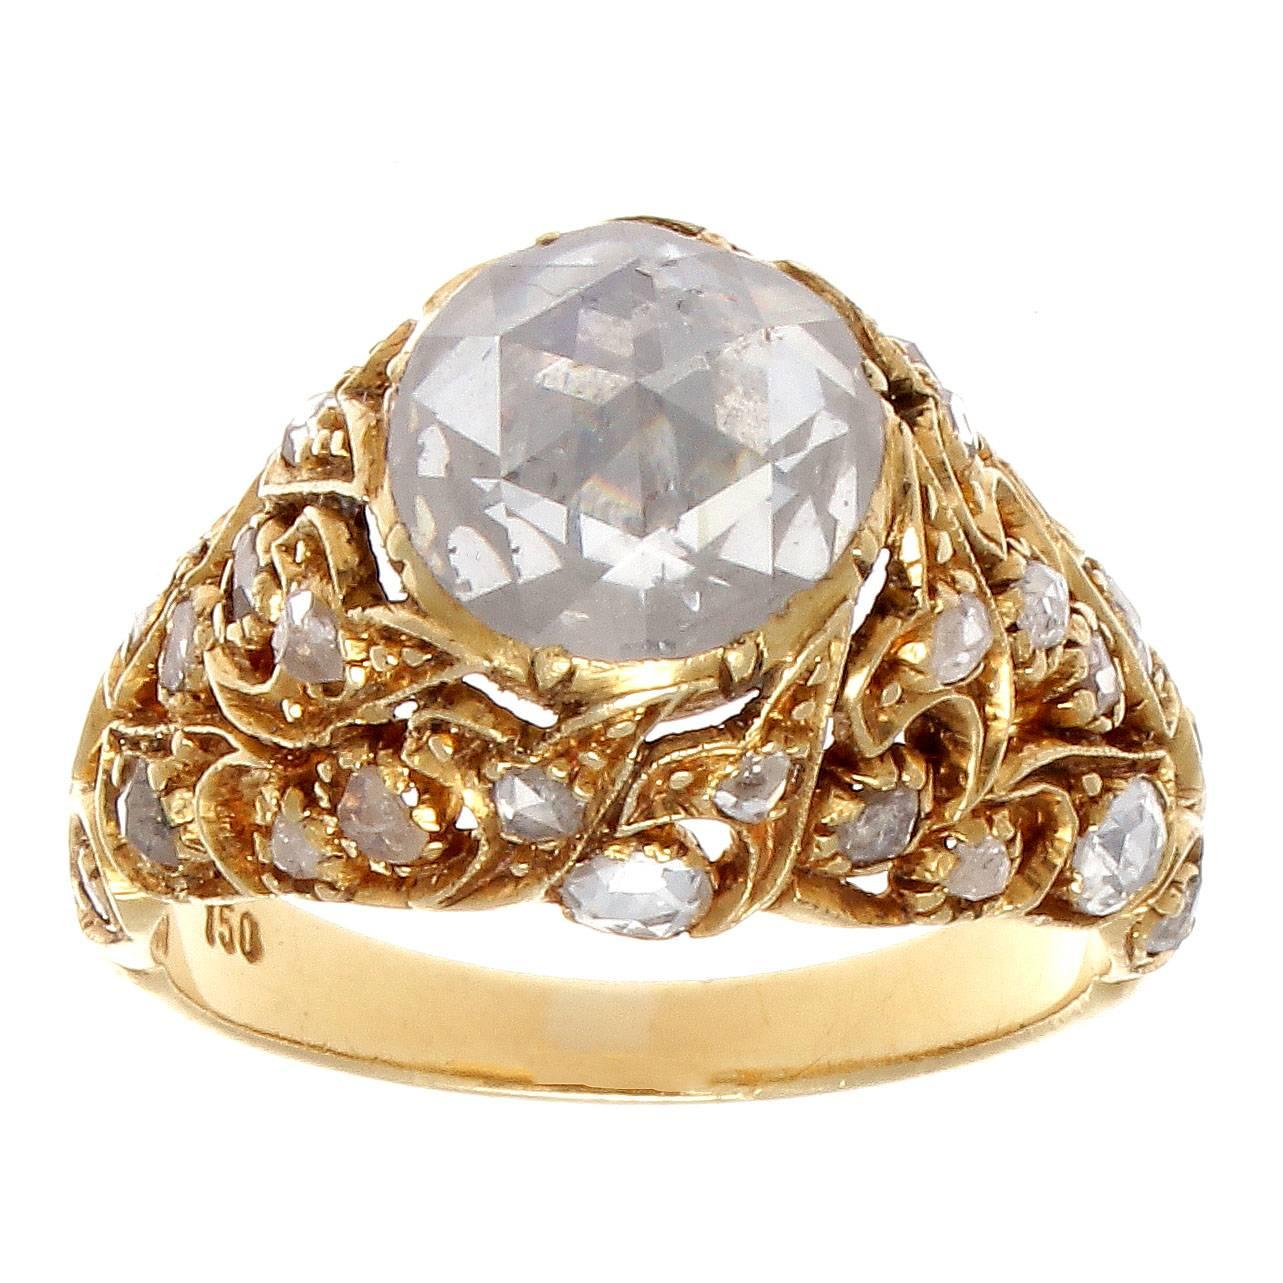 turkish gold ring design